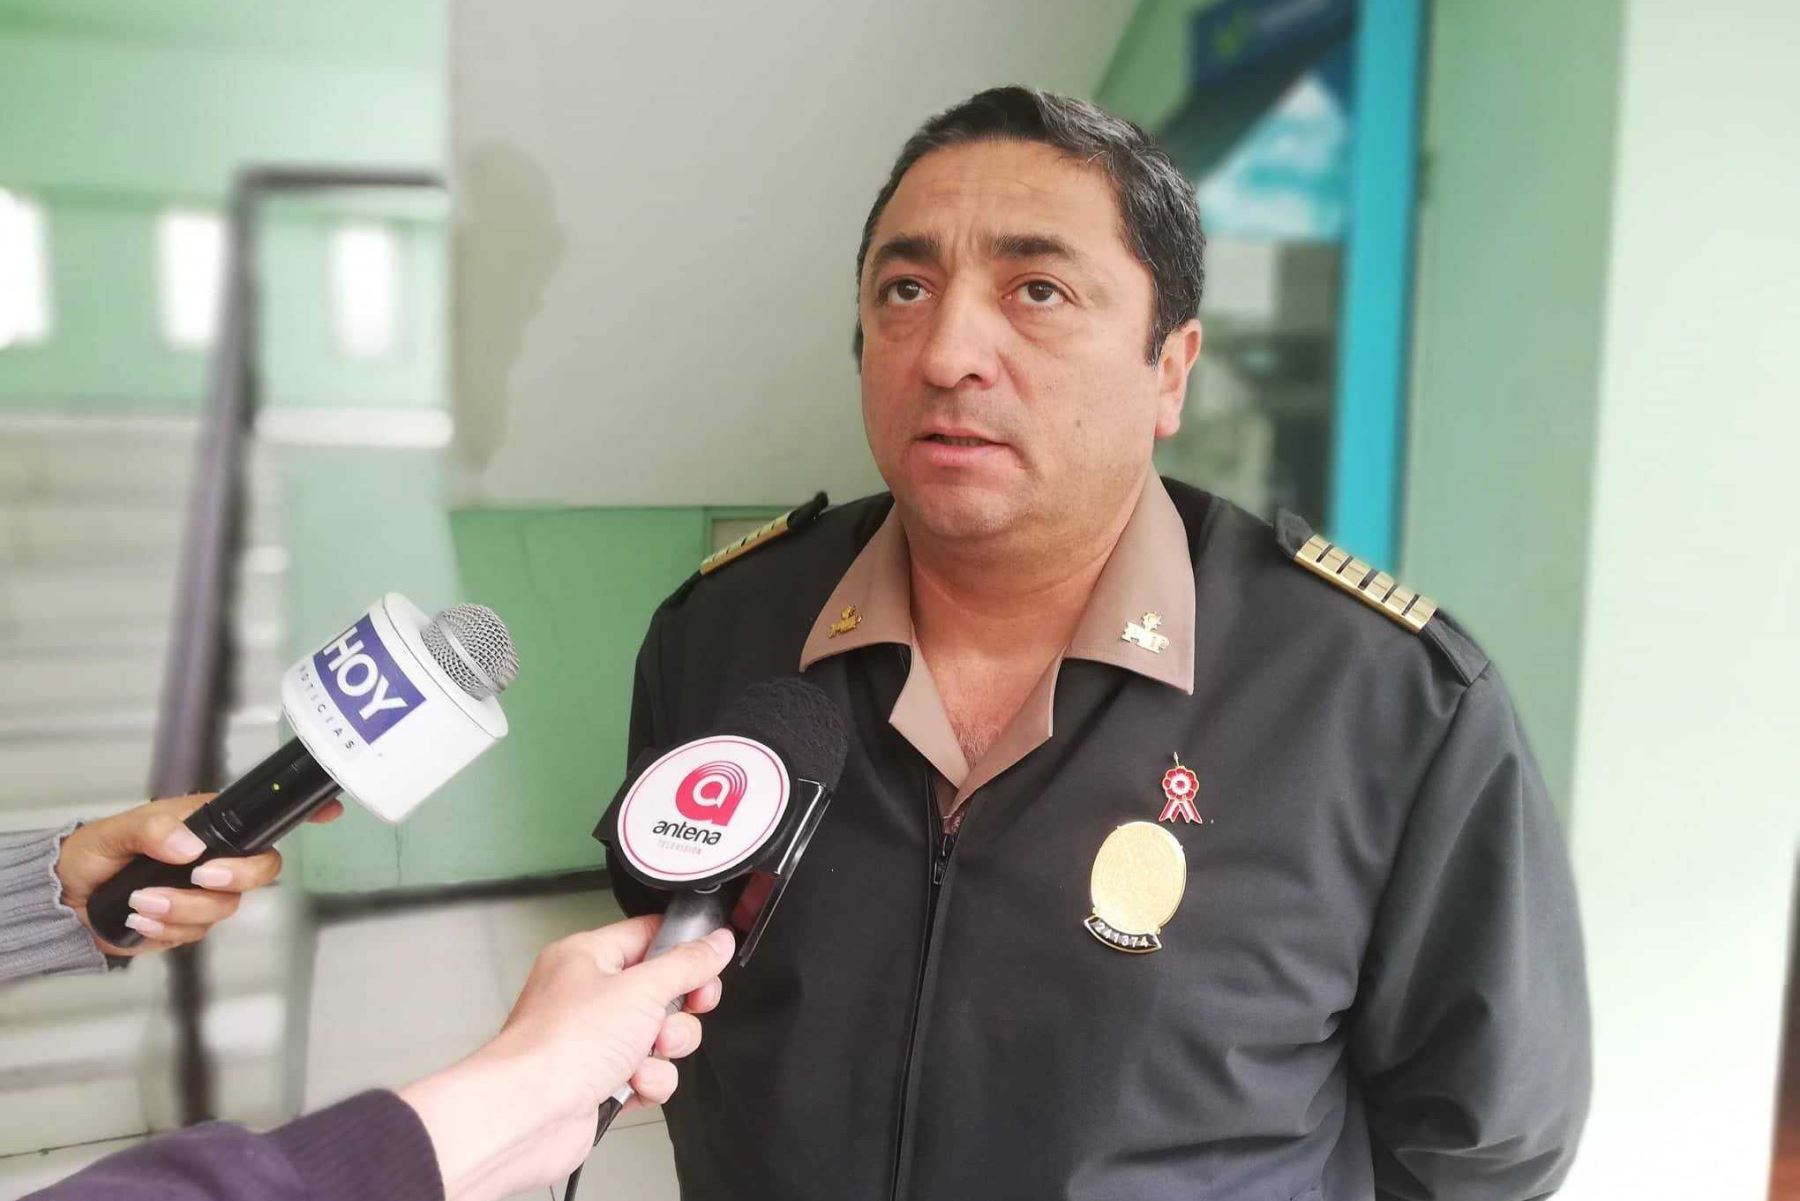 La División Policial (Divipol) de Chimbote emprendió una campaña de solidaridad, denominada “Abrigando Corazones”, a favor de las regiones del sur del país, afectadas por las bajas temperaturas.